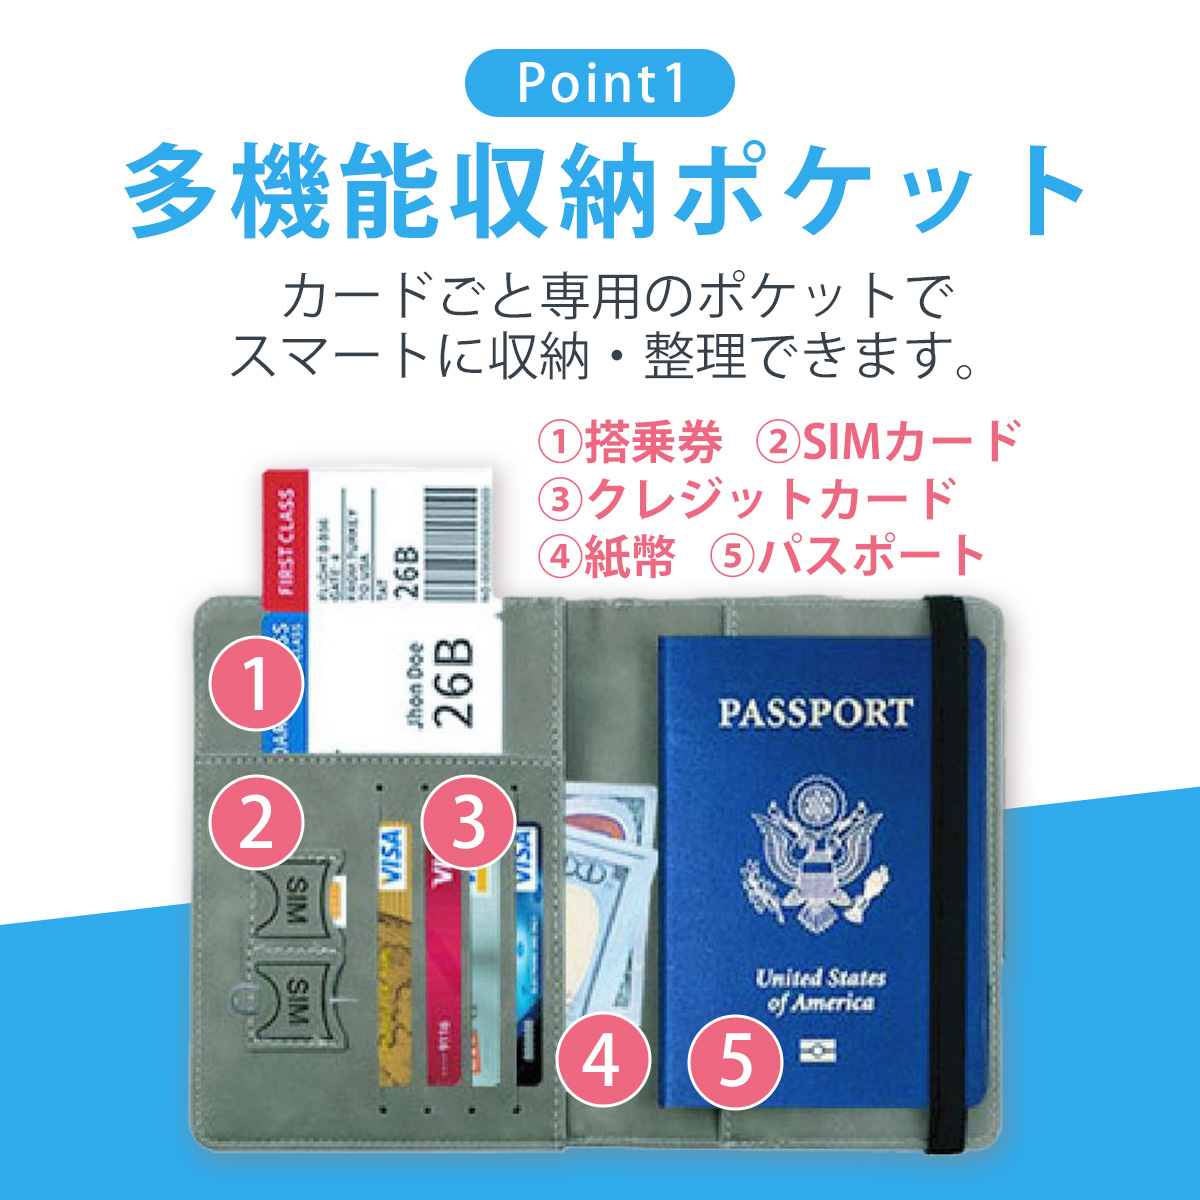  паспорт кейс паспорт покрытие скимминг предотвращение путешествие за границу семья паспорт inserting авиабилет inserting тонкий модный симпатичный легкий путешествие товары 